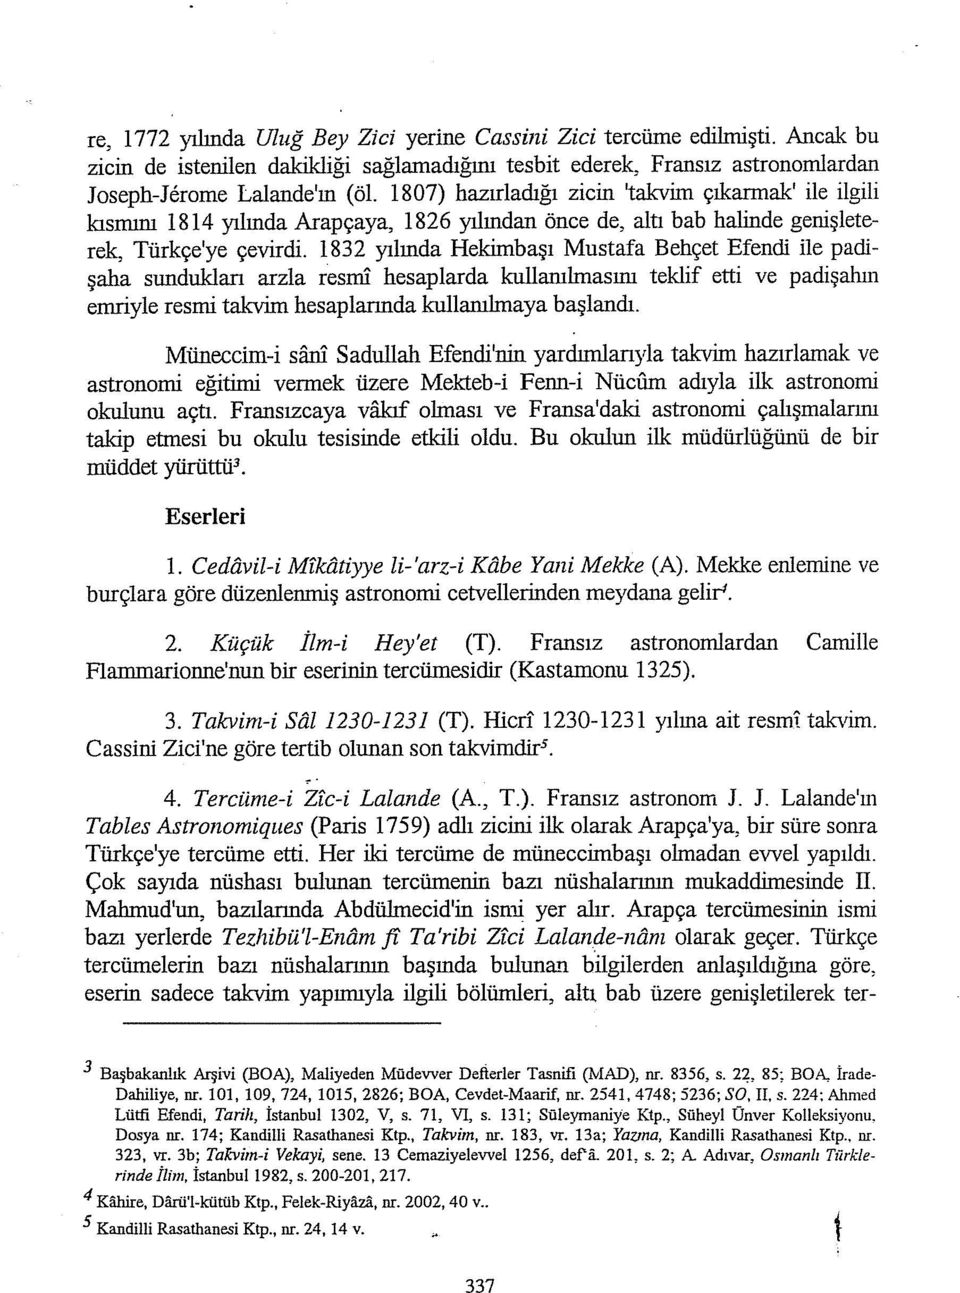 ı832 yılında Hekimbaşı Mustafa Behçet Efeneli ile paclişaha sunduklan arzla resınl hesaplarda kullanılmasını teklif etti ve padişalıın emriyle resmi takvim hesaplarında kullanılmaya başlandı.